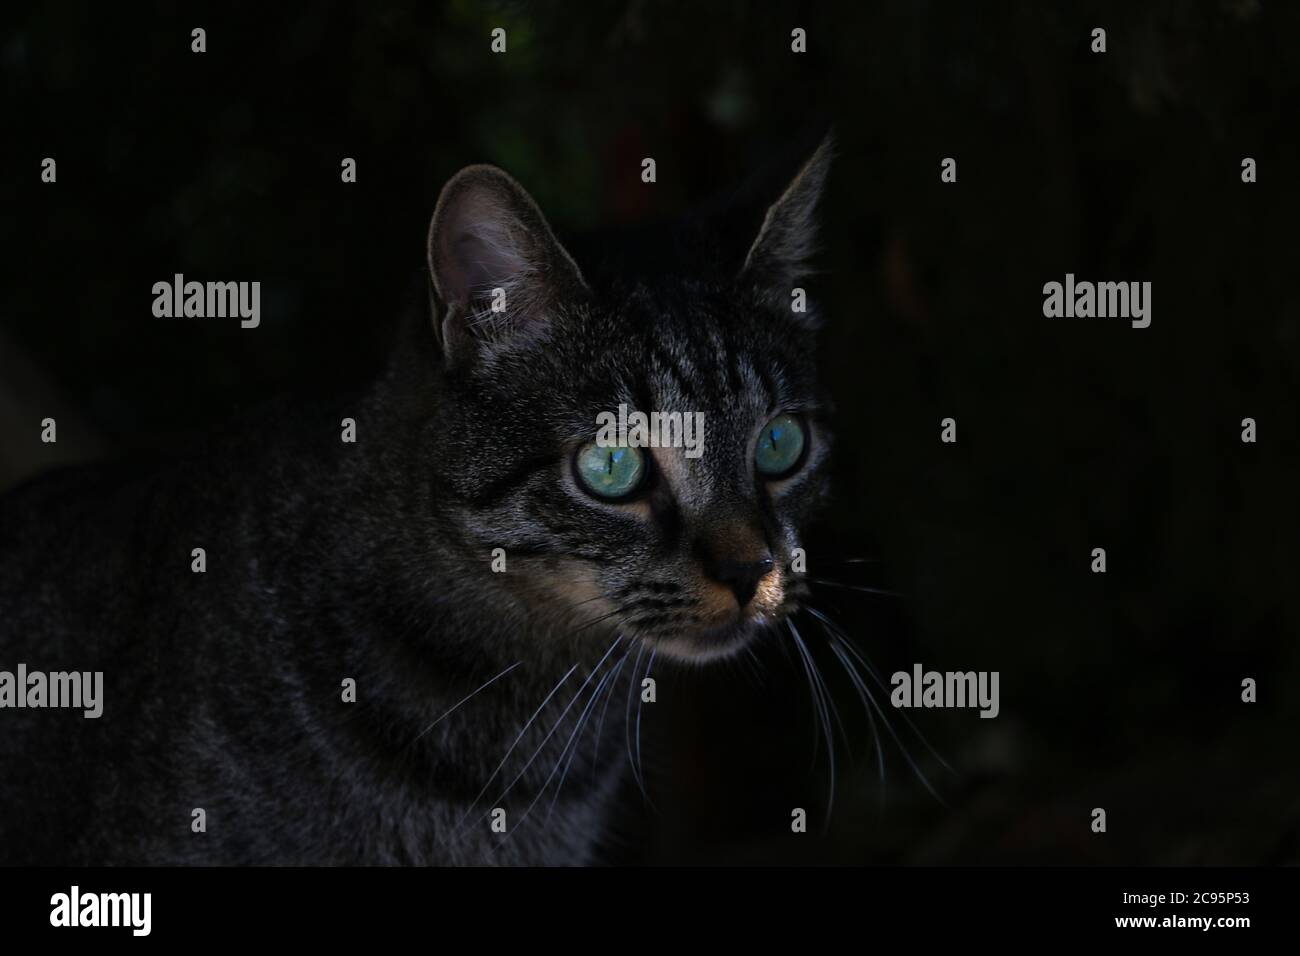 Bel gatto con gli occhi verdi al buio Foto Stock